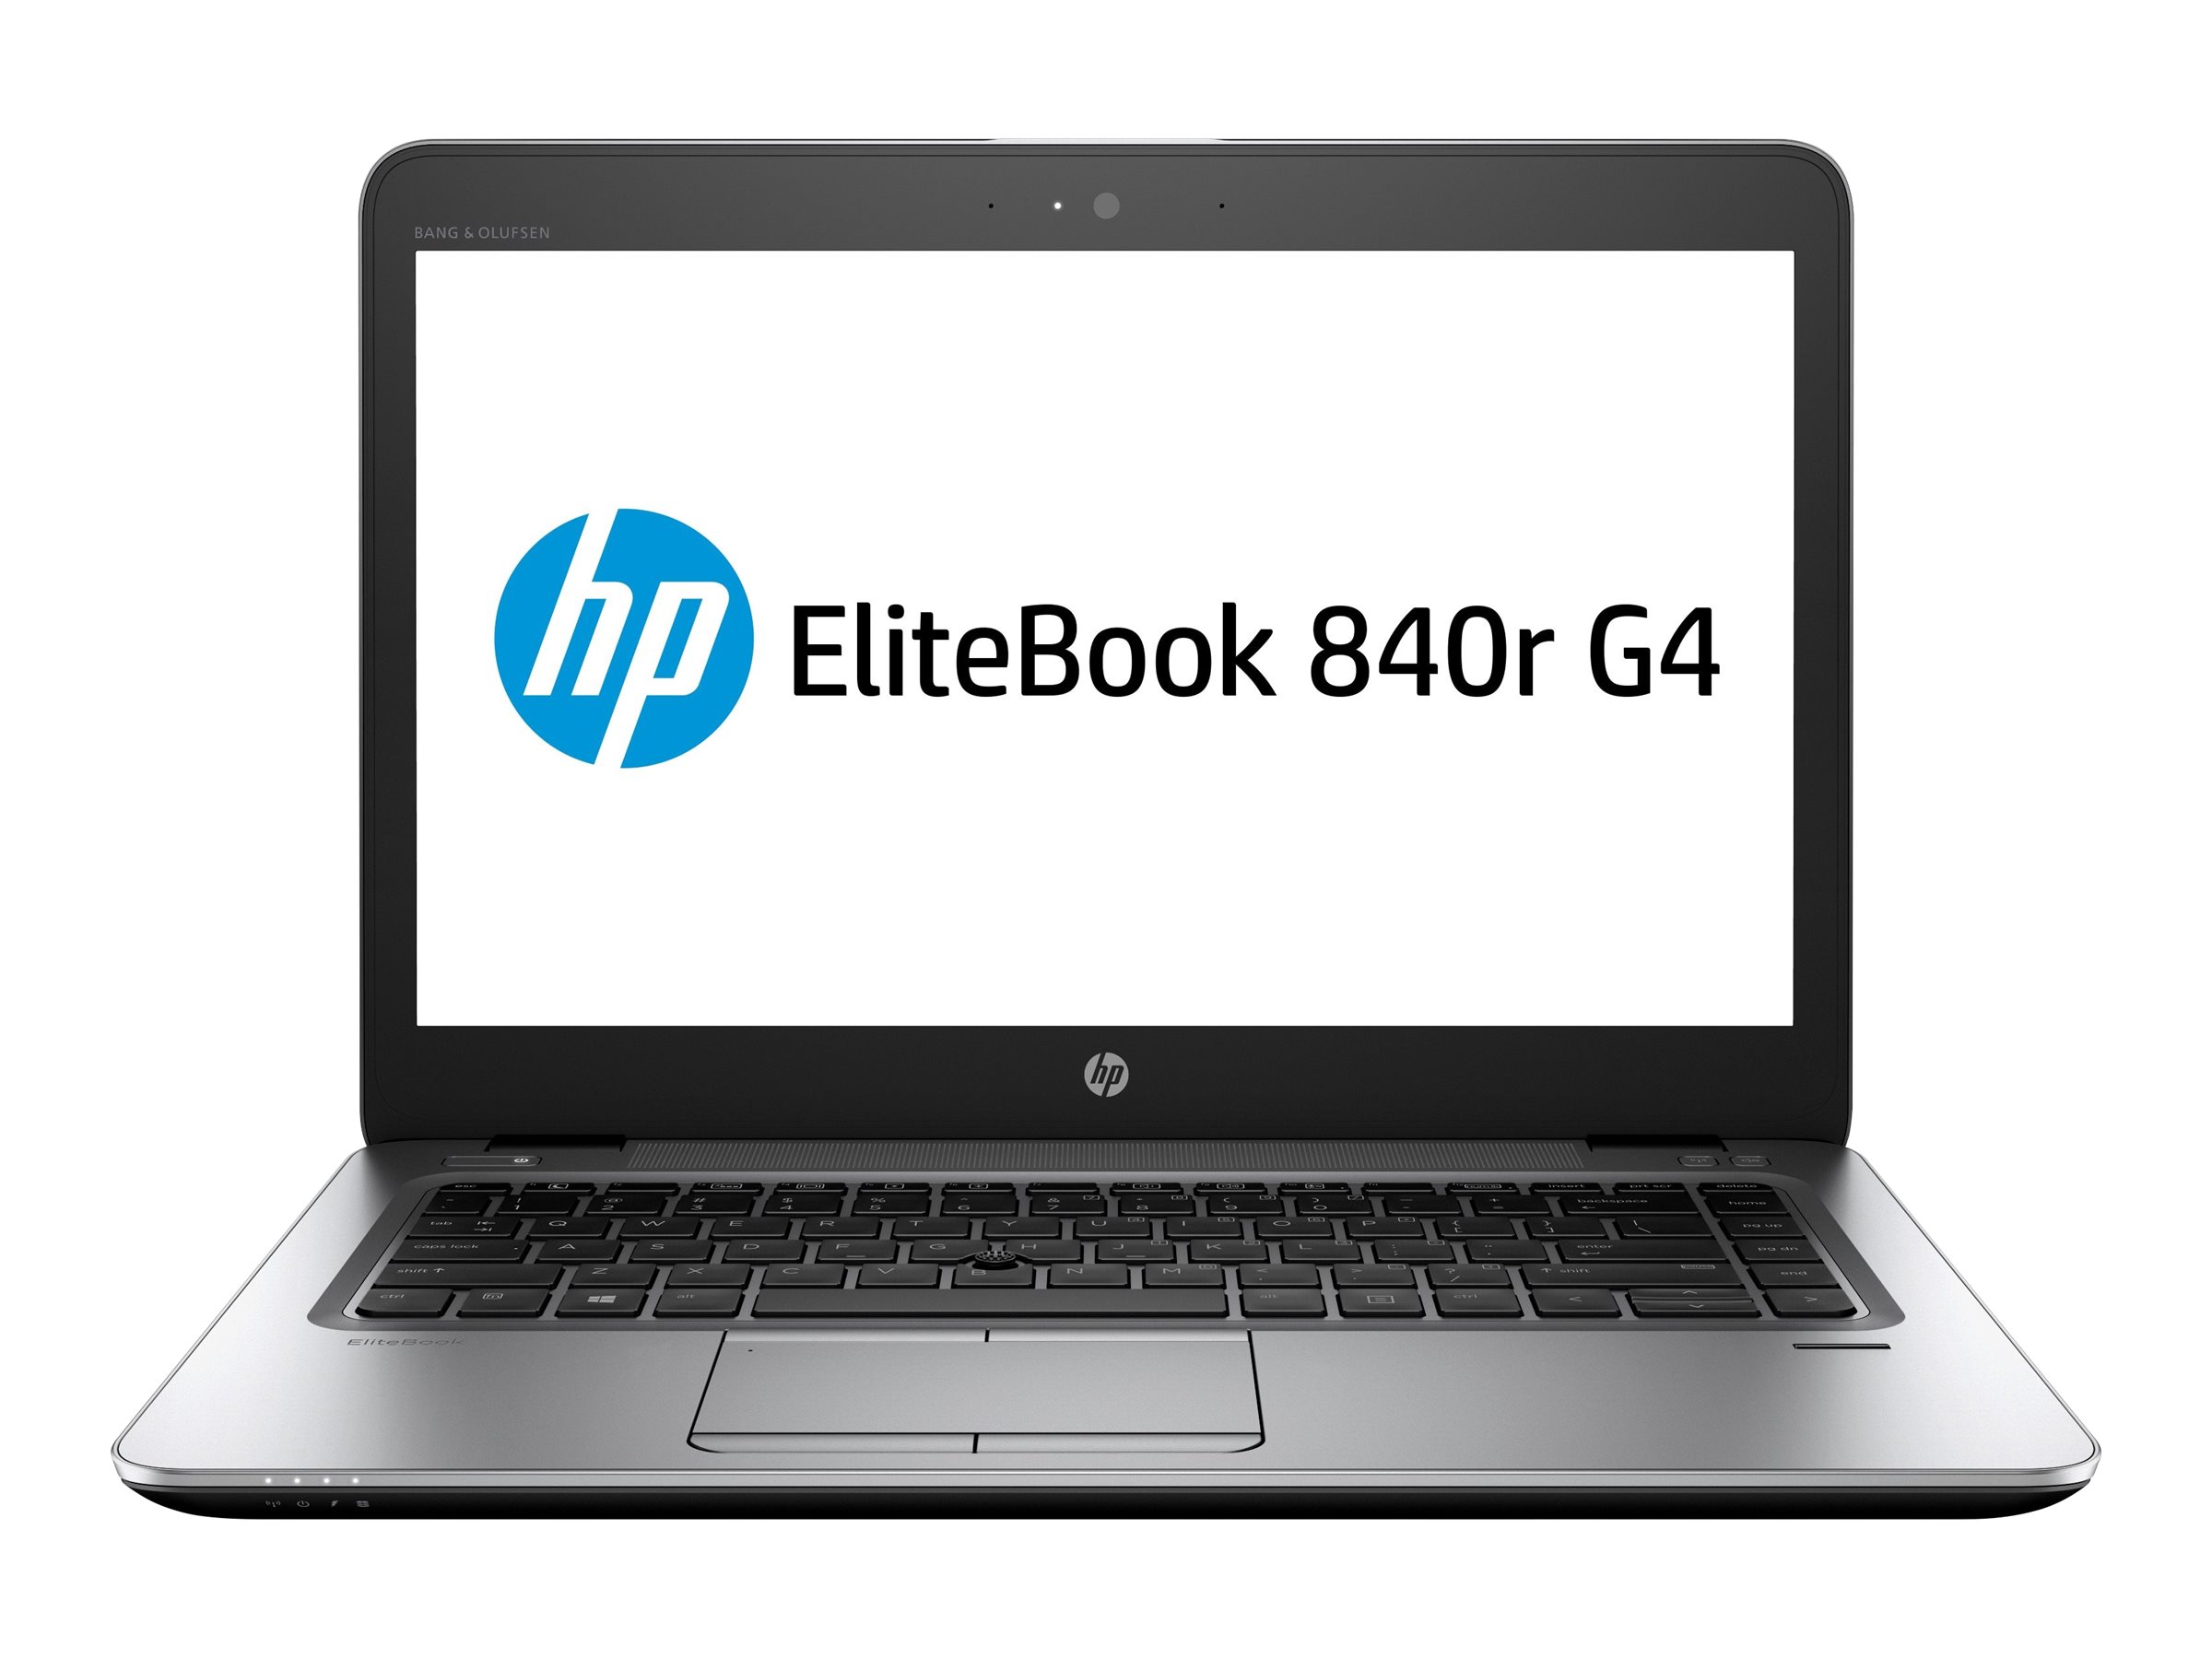 HP EliteBook 840r G4 Notebook